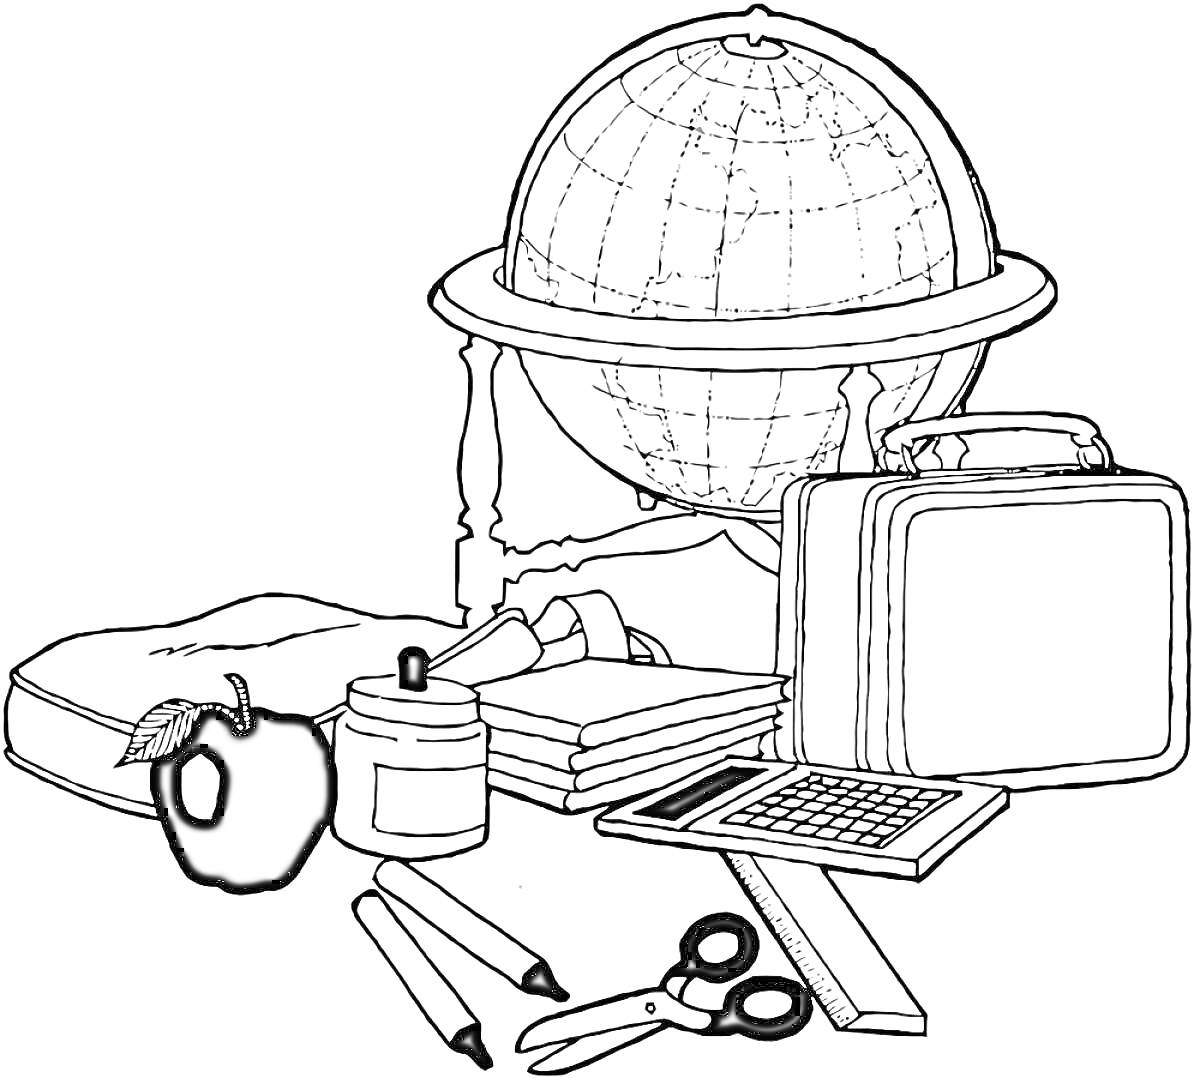 Глобус с учебными принадлежностями: школьная сумка, яблоко, банка с красками, три книги, свёрнутый свиток, школьный ланчбокс, калькулятор, ножницы, два карандаша